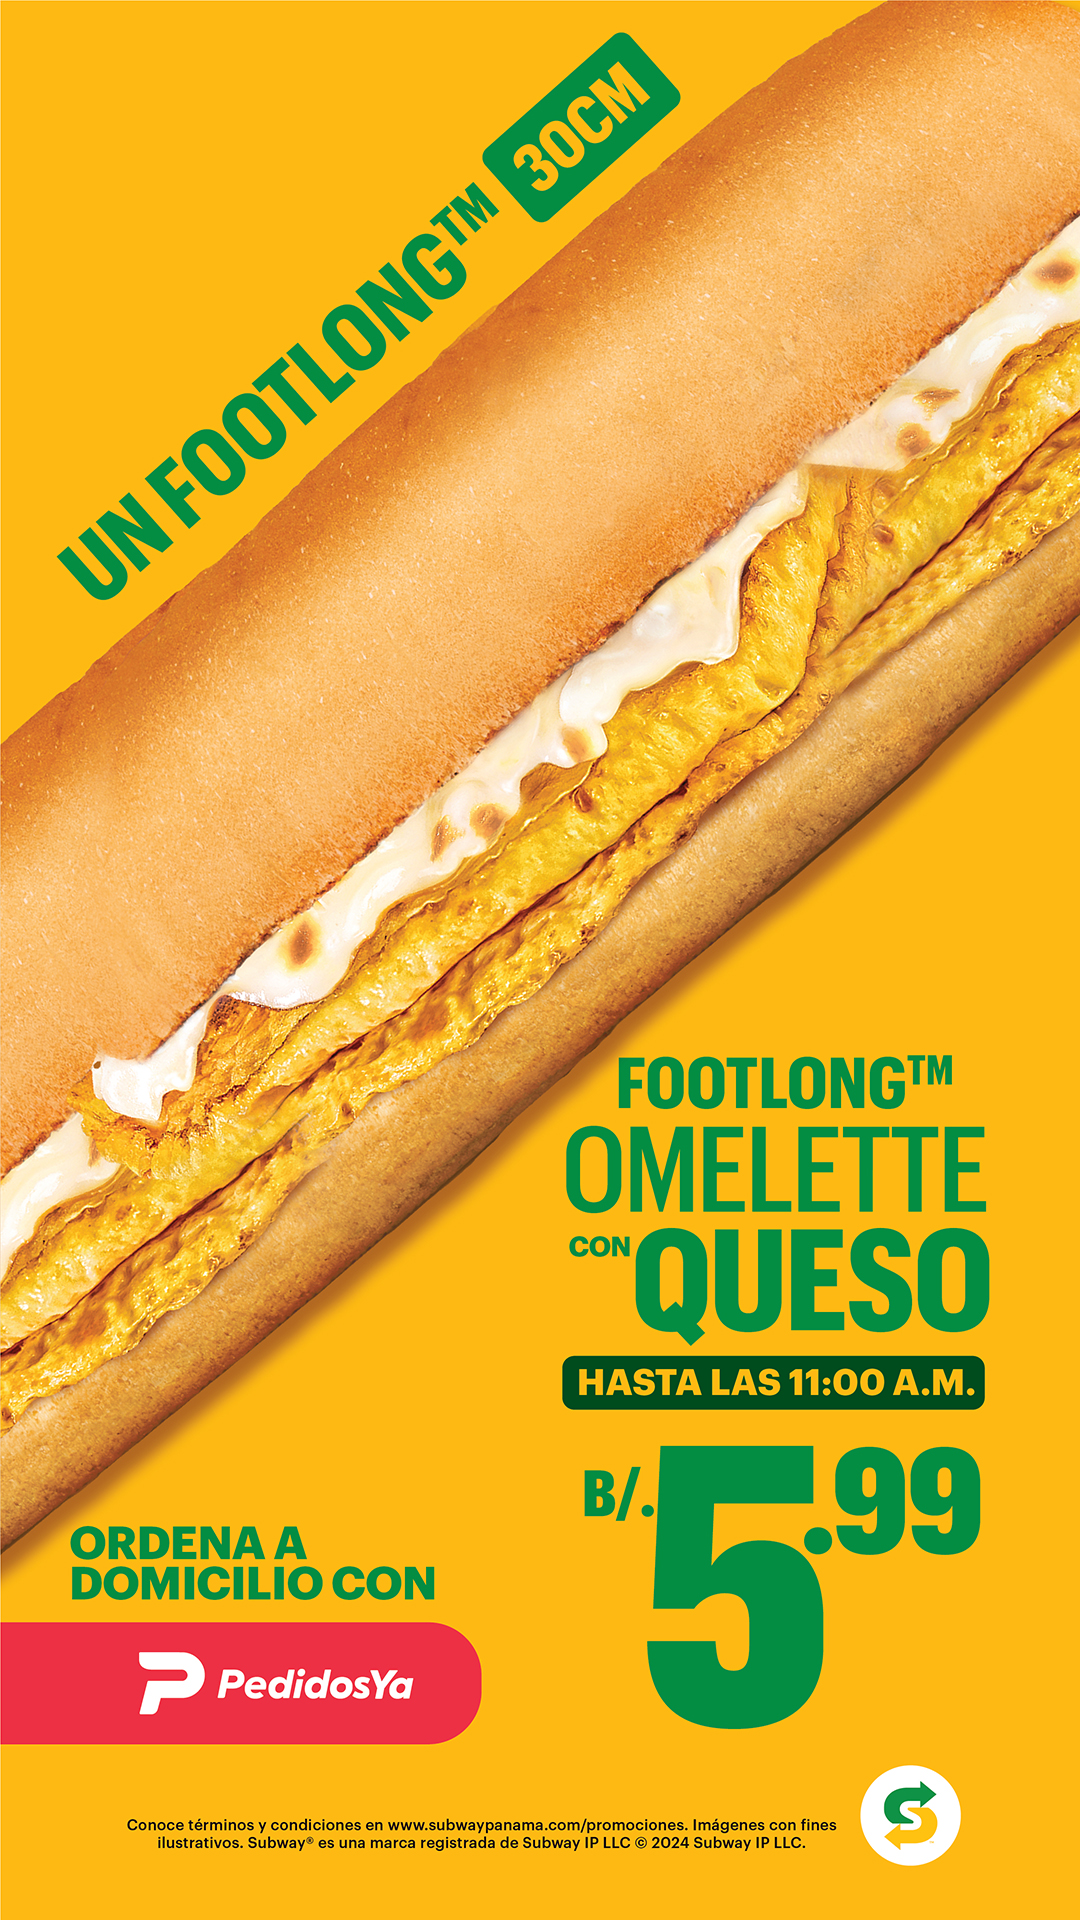 1-sub-omelette-con-queso-de-30cm-599